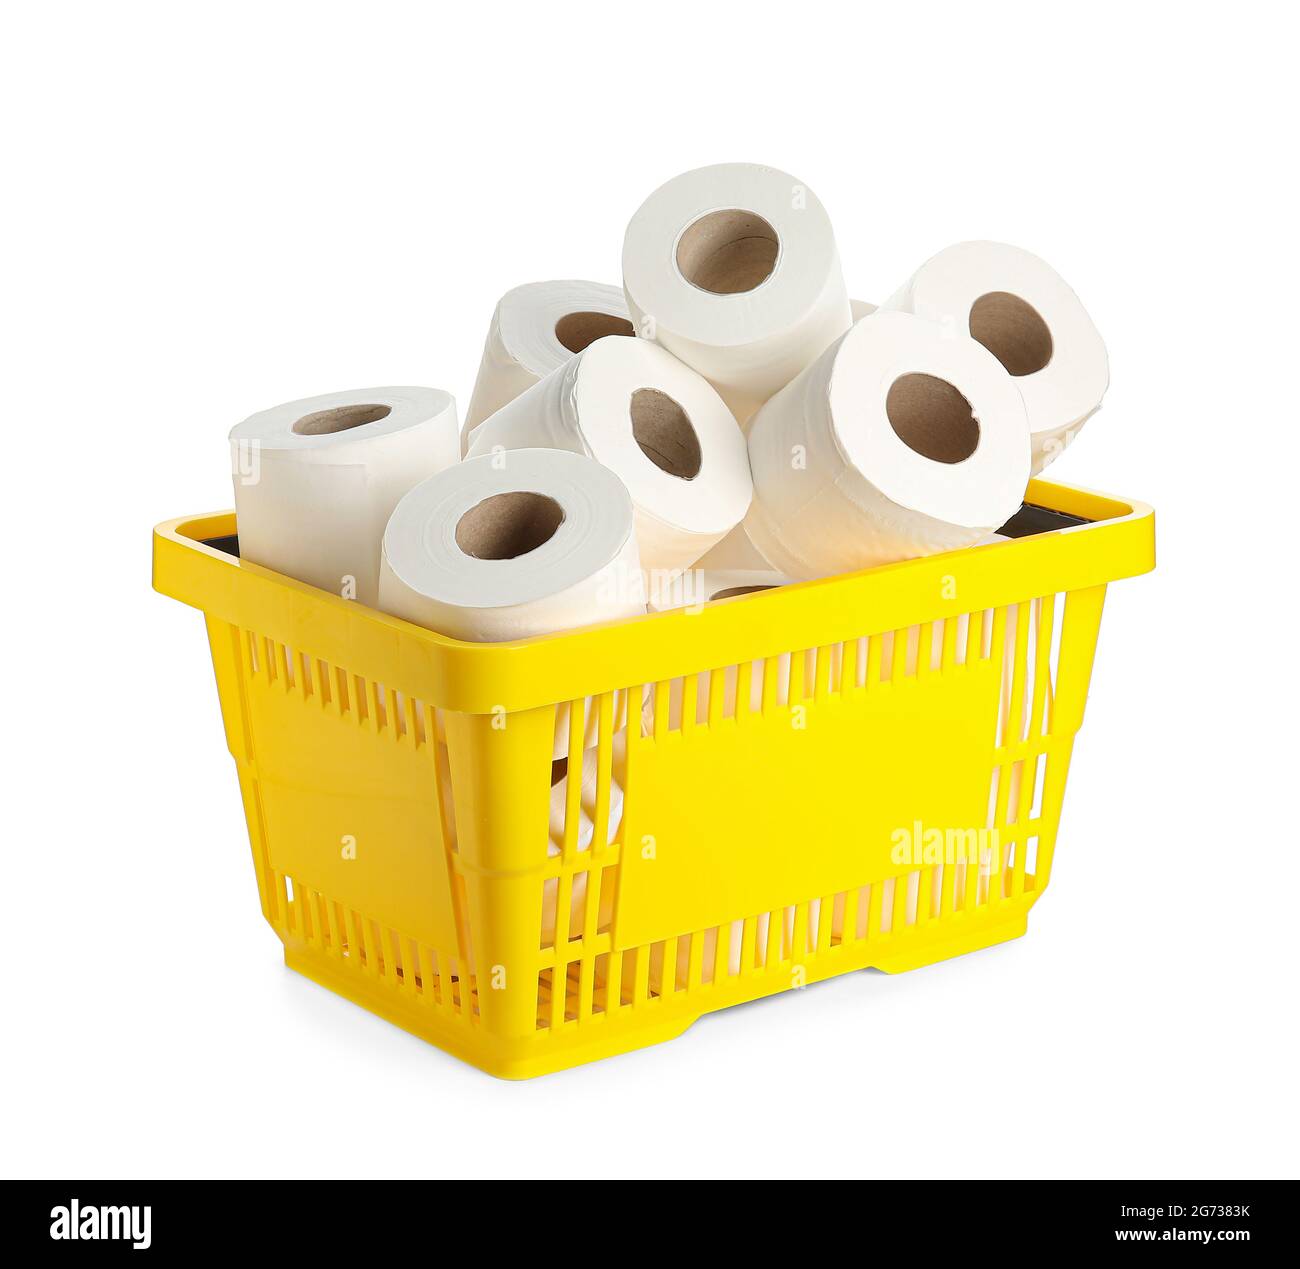 Rollos de papel higiénico en una canasta Fotografía de stock - Alamy